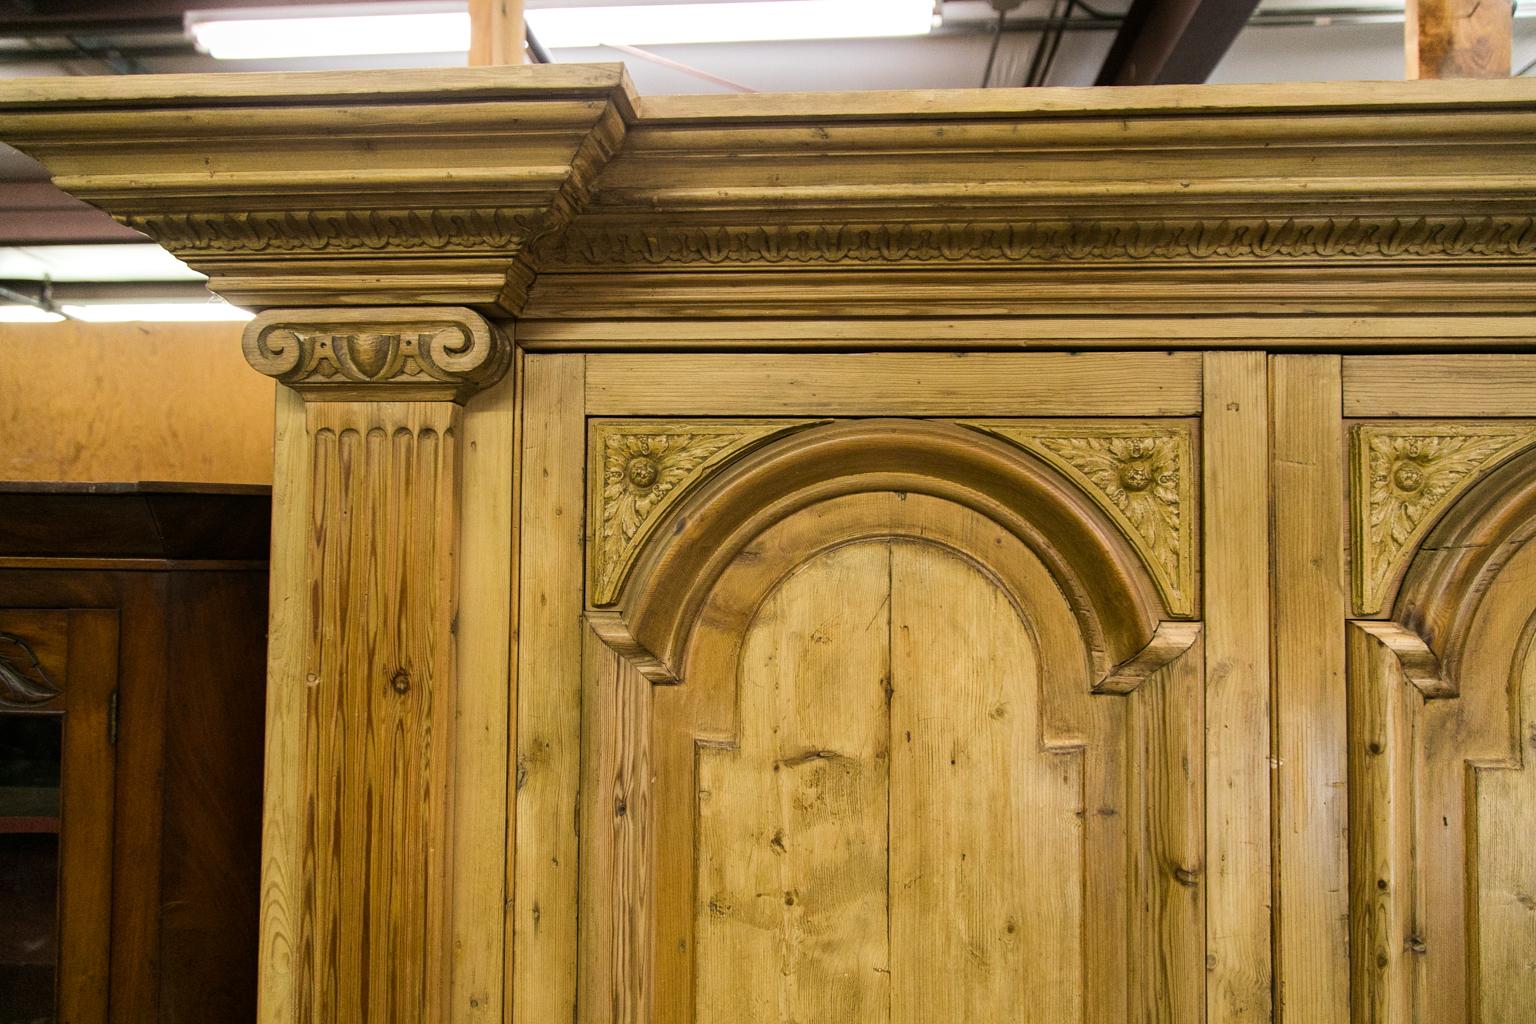 Ce meuble de divertissement en pin a été fabriqué à partir de pin ancien récupéré. Les portes supérieures sont dotées de panneaux arqués en relief encadrés par de lourdes moulures et des panneaux d'angle sculptés. Les montants ont des pilastres